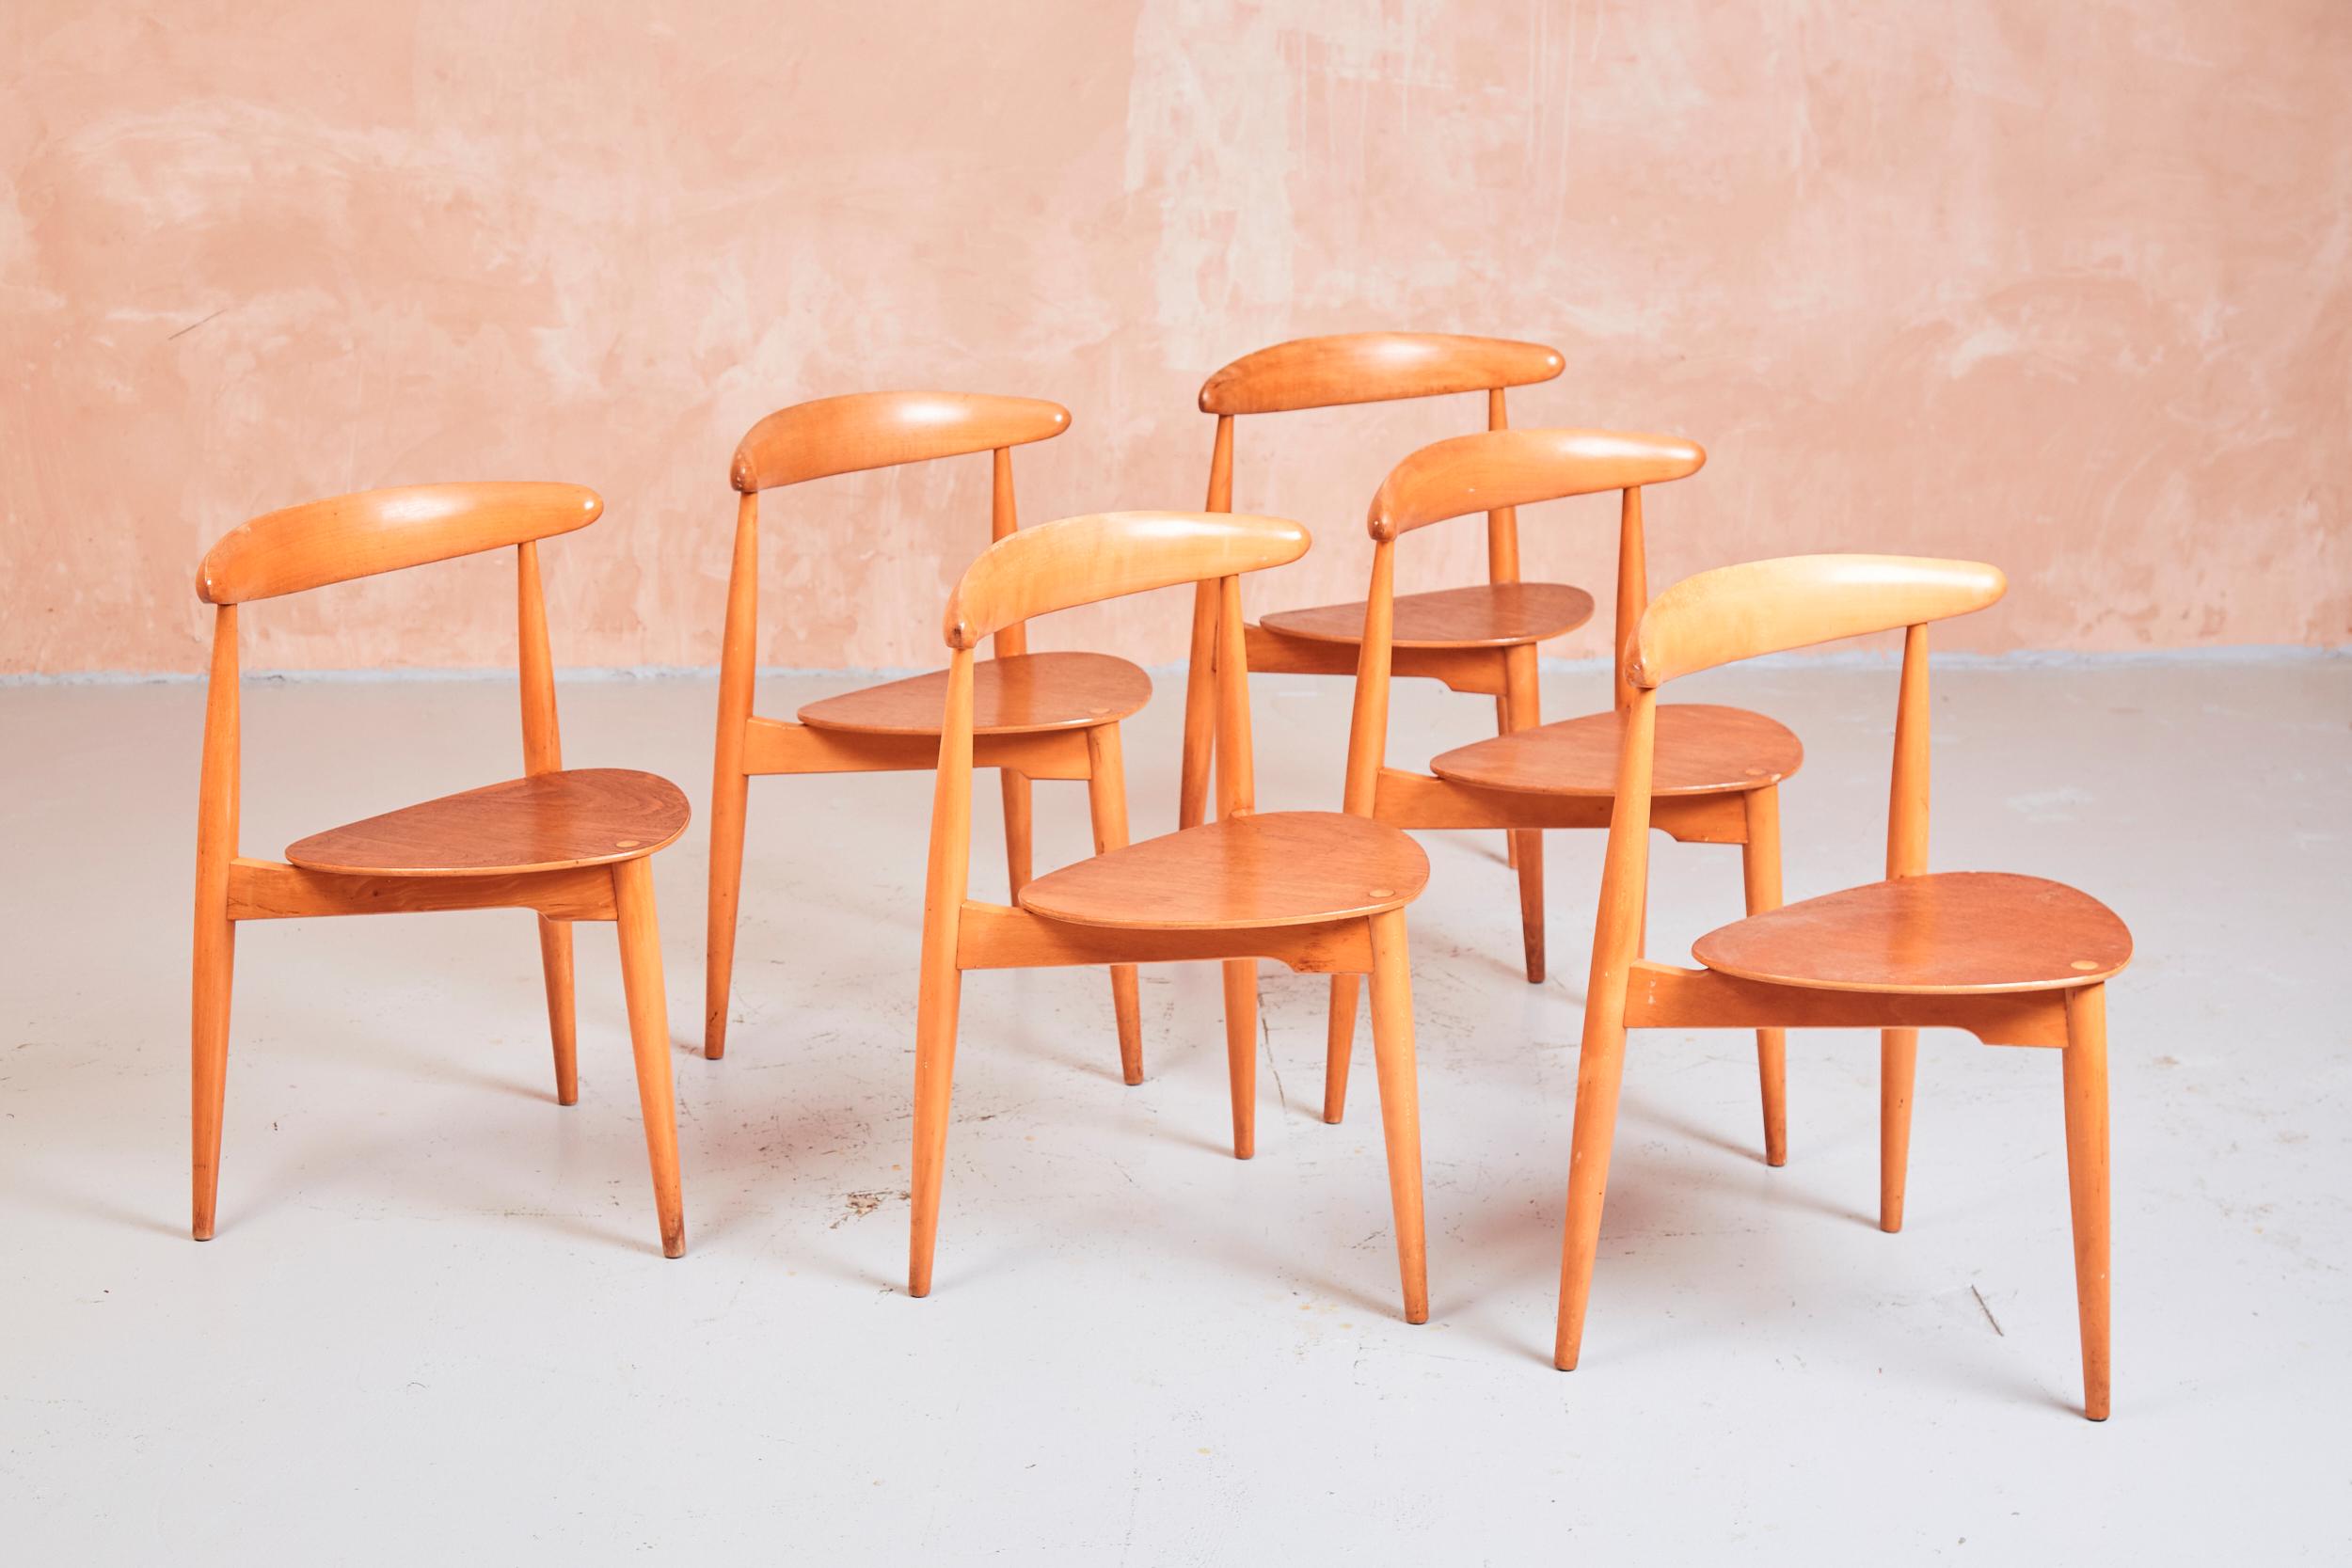 Conçu à l'origine par Hans Wegner dans les années 1950, le FH4103 a été fabriqué par Fritz Hansen et vendu à Londres par Story's of Kensington.

Fabriquées en hêtre et en teck, les chaises FH4103 sont également connues sous le nom de chaises